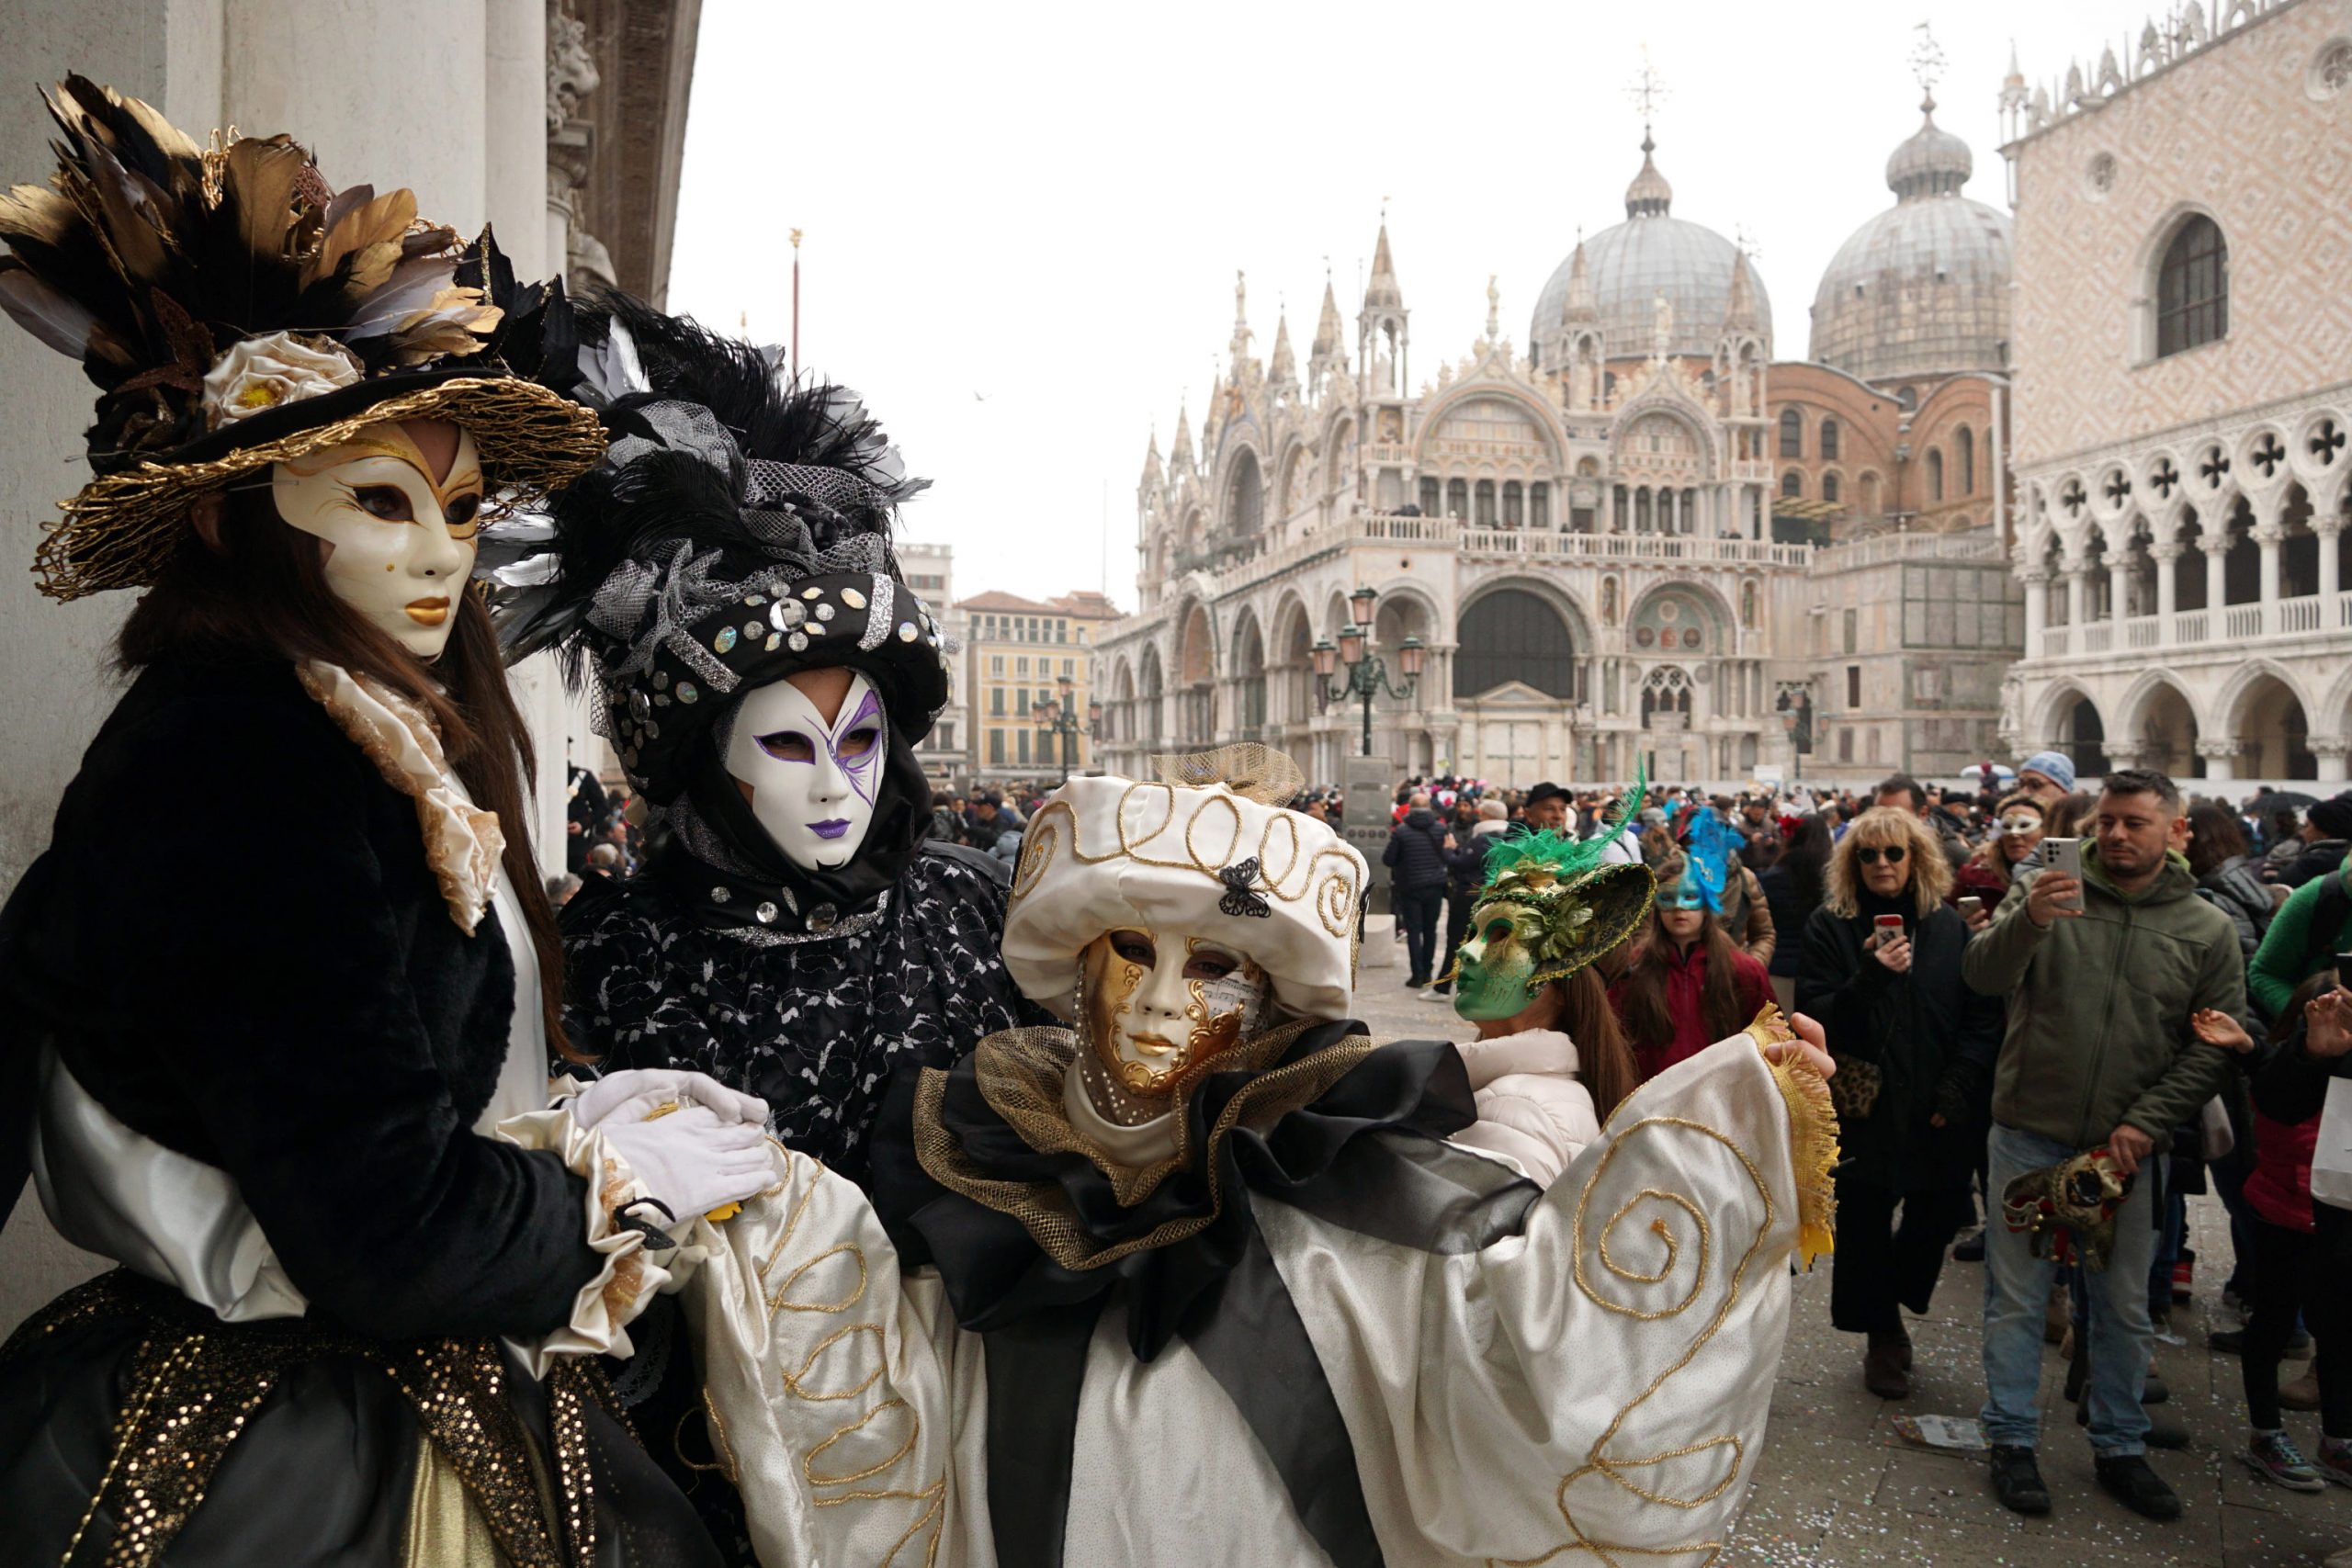 拚图两图)中国传统服饰首次亮相意大利威尼斯狂欢节 奏起《梁祝》